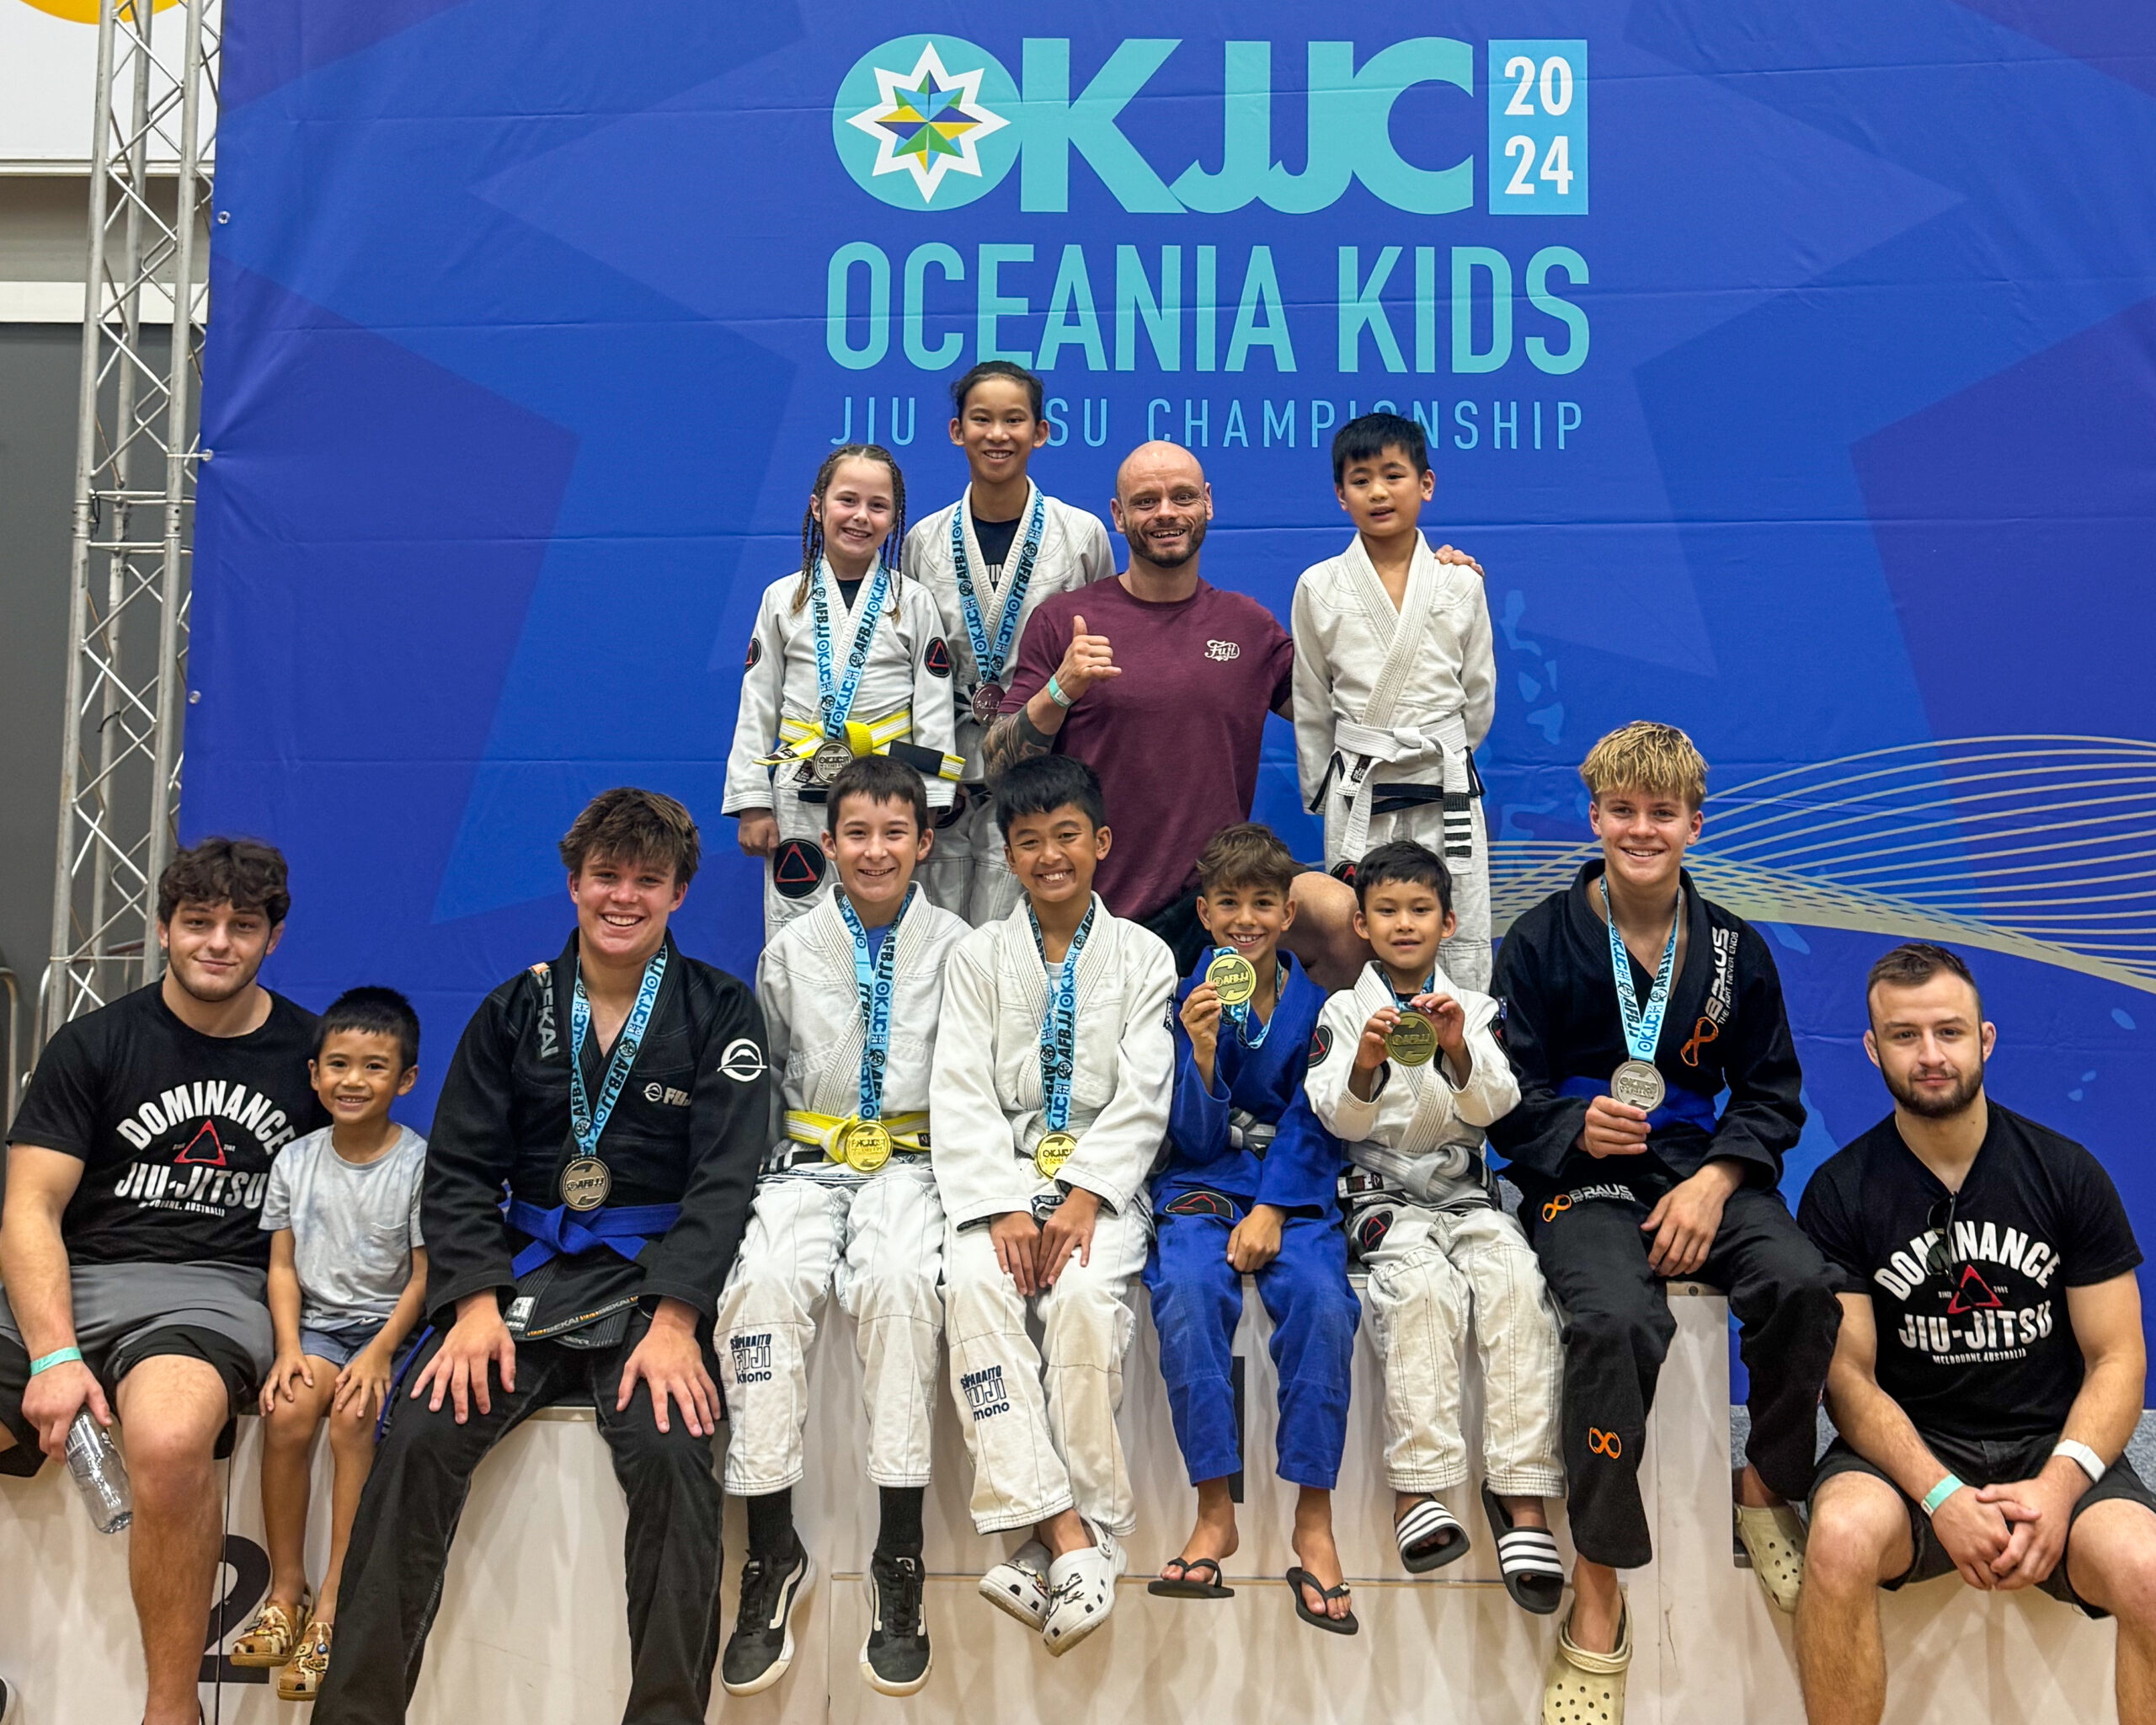 AFBJ Oceania Kids Jiu Jitsu Championships